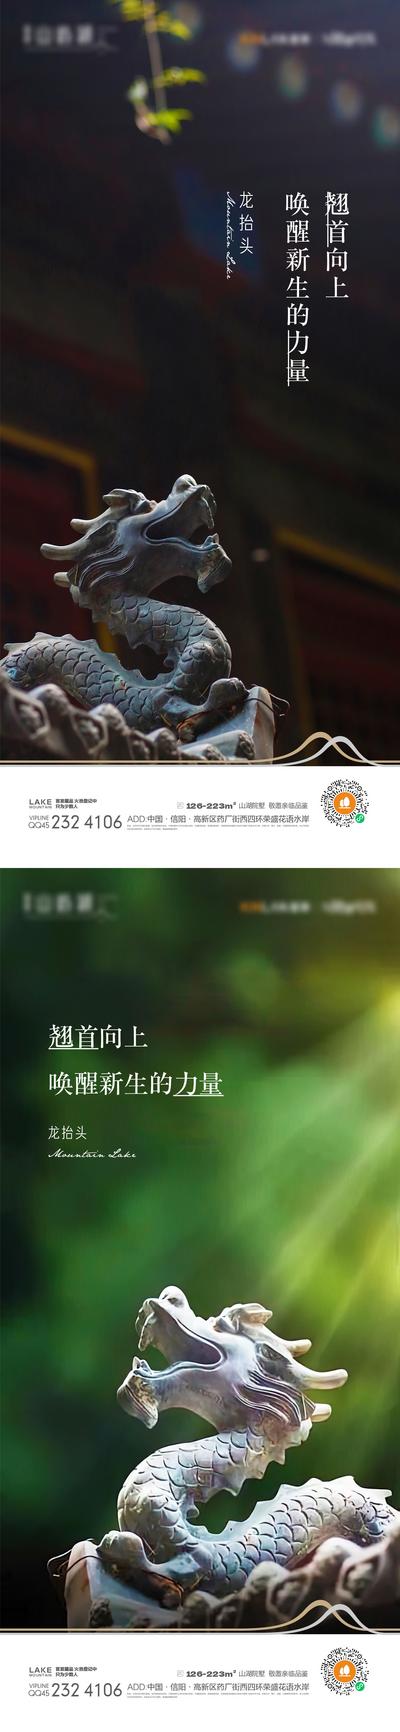 南门网 海报 中国传统节日 龙抬头 二月二 春天 